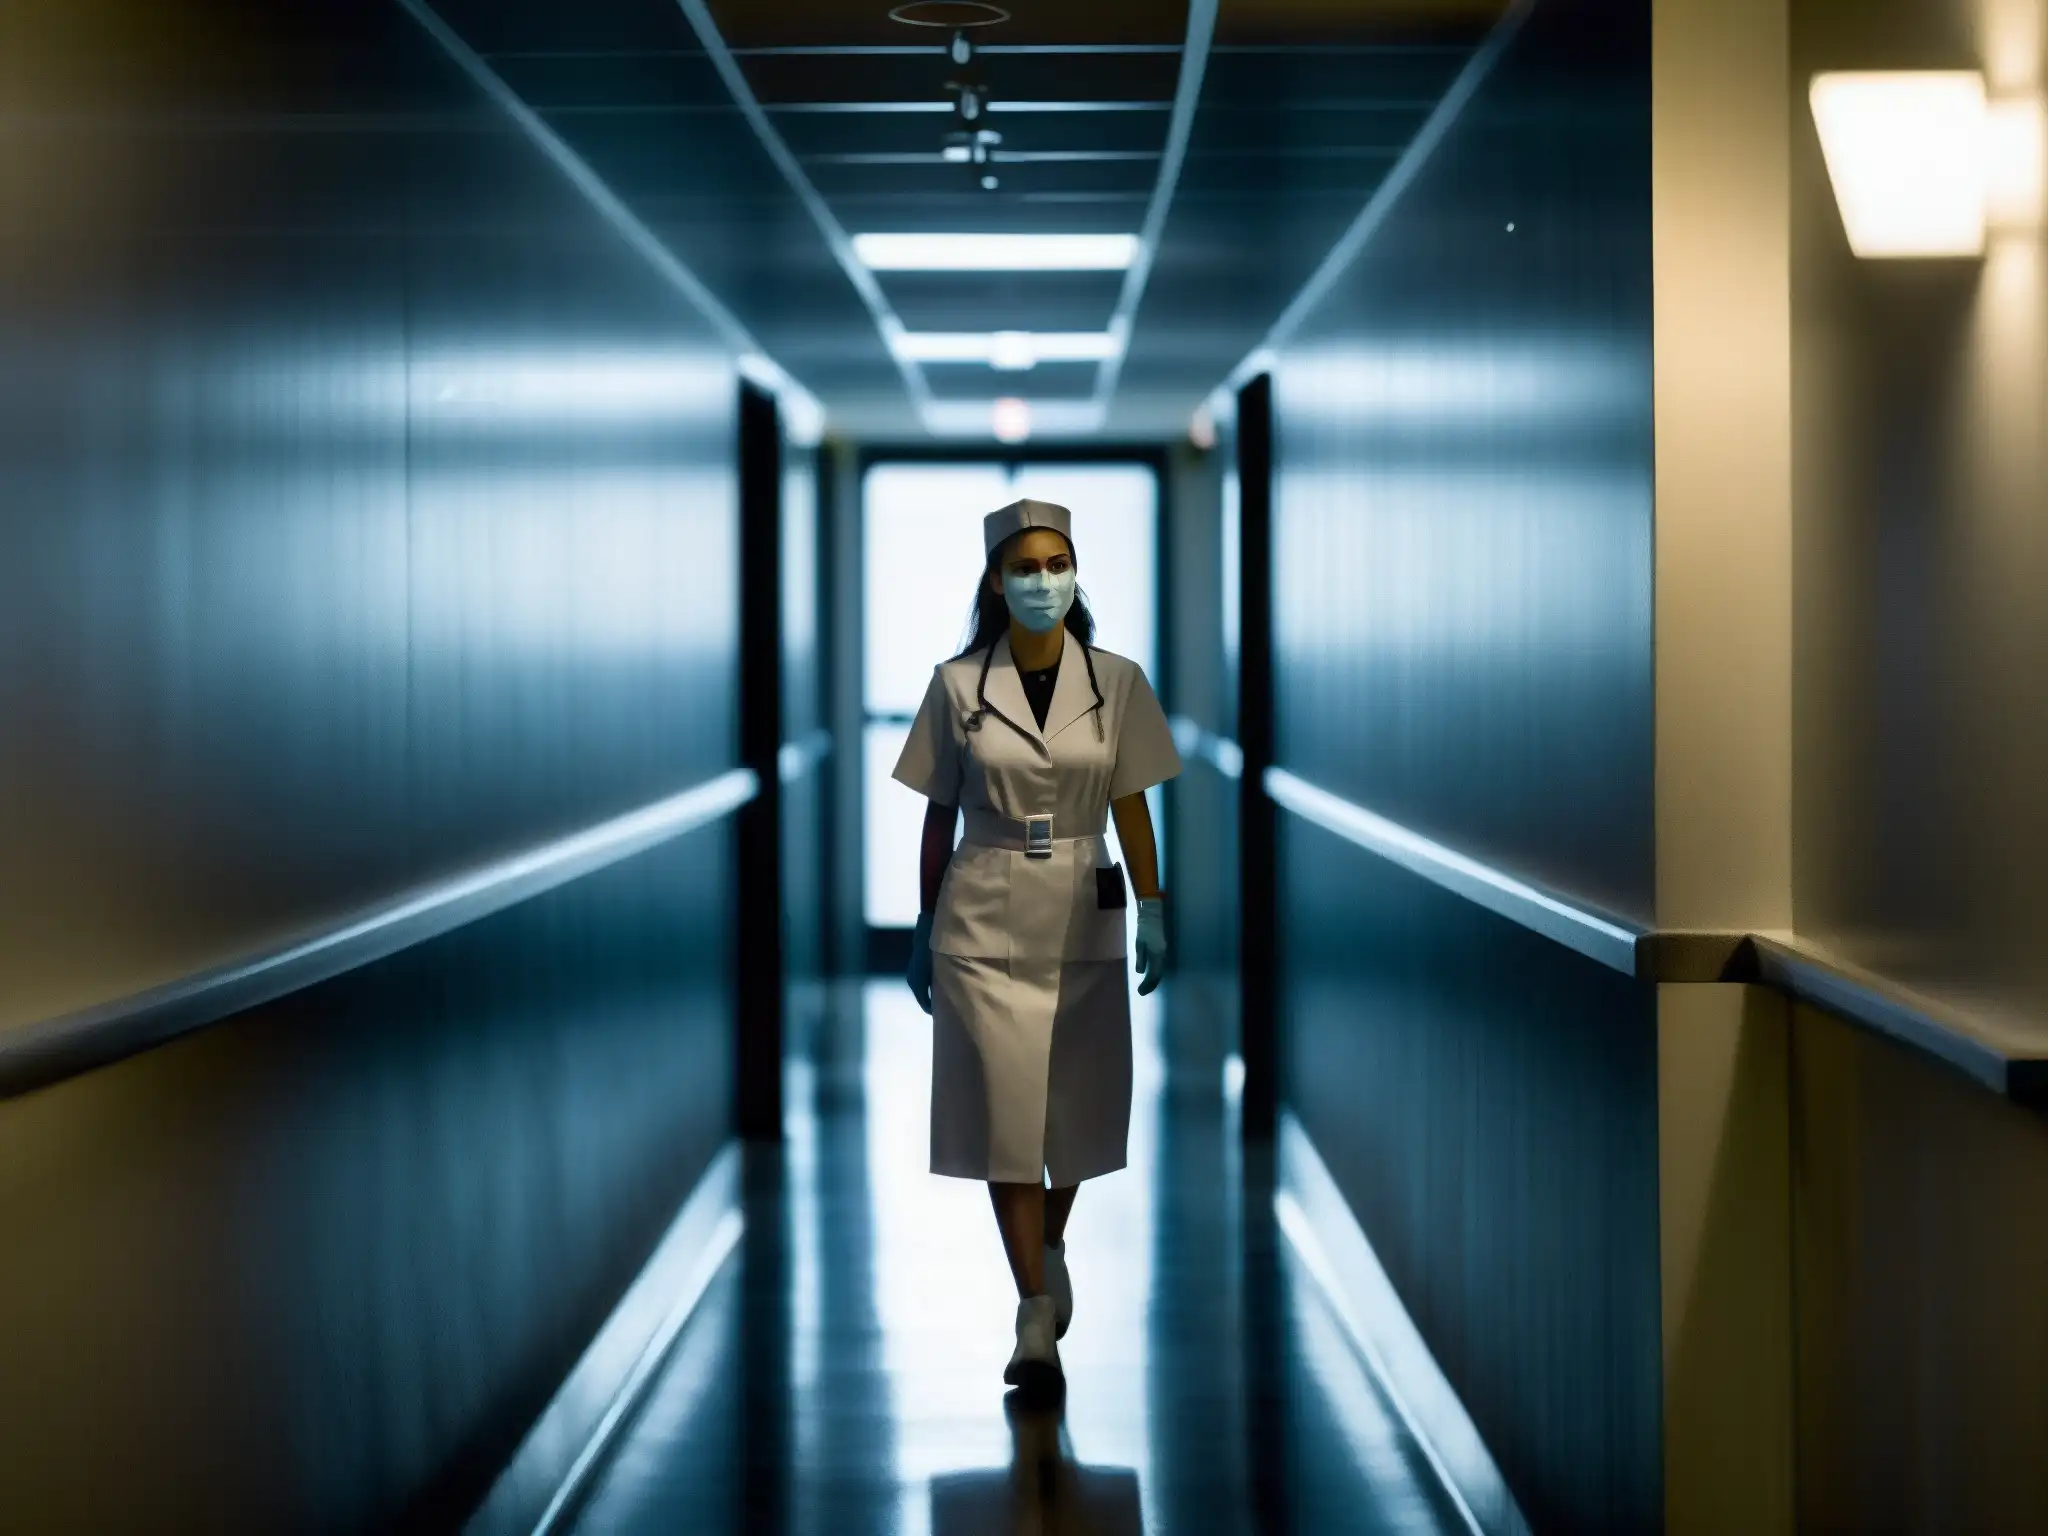 Una misteriosa enfermera en un pasillo oscuro de hospital, evocando la leyenda mexicana de La Planchada